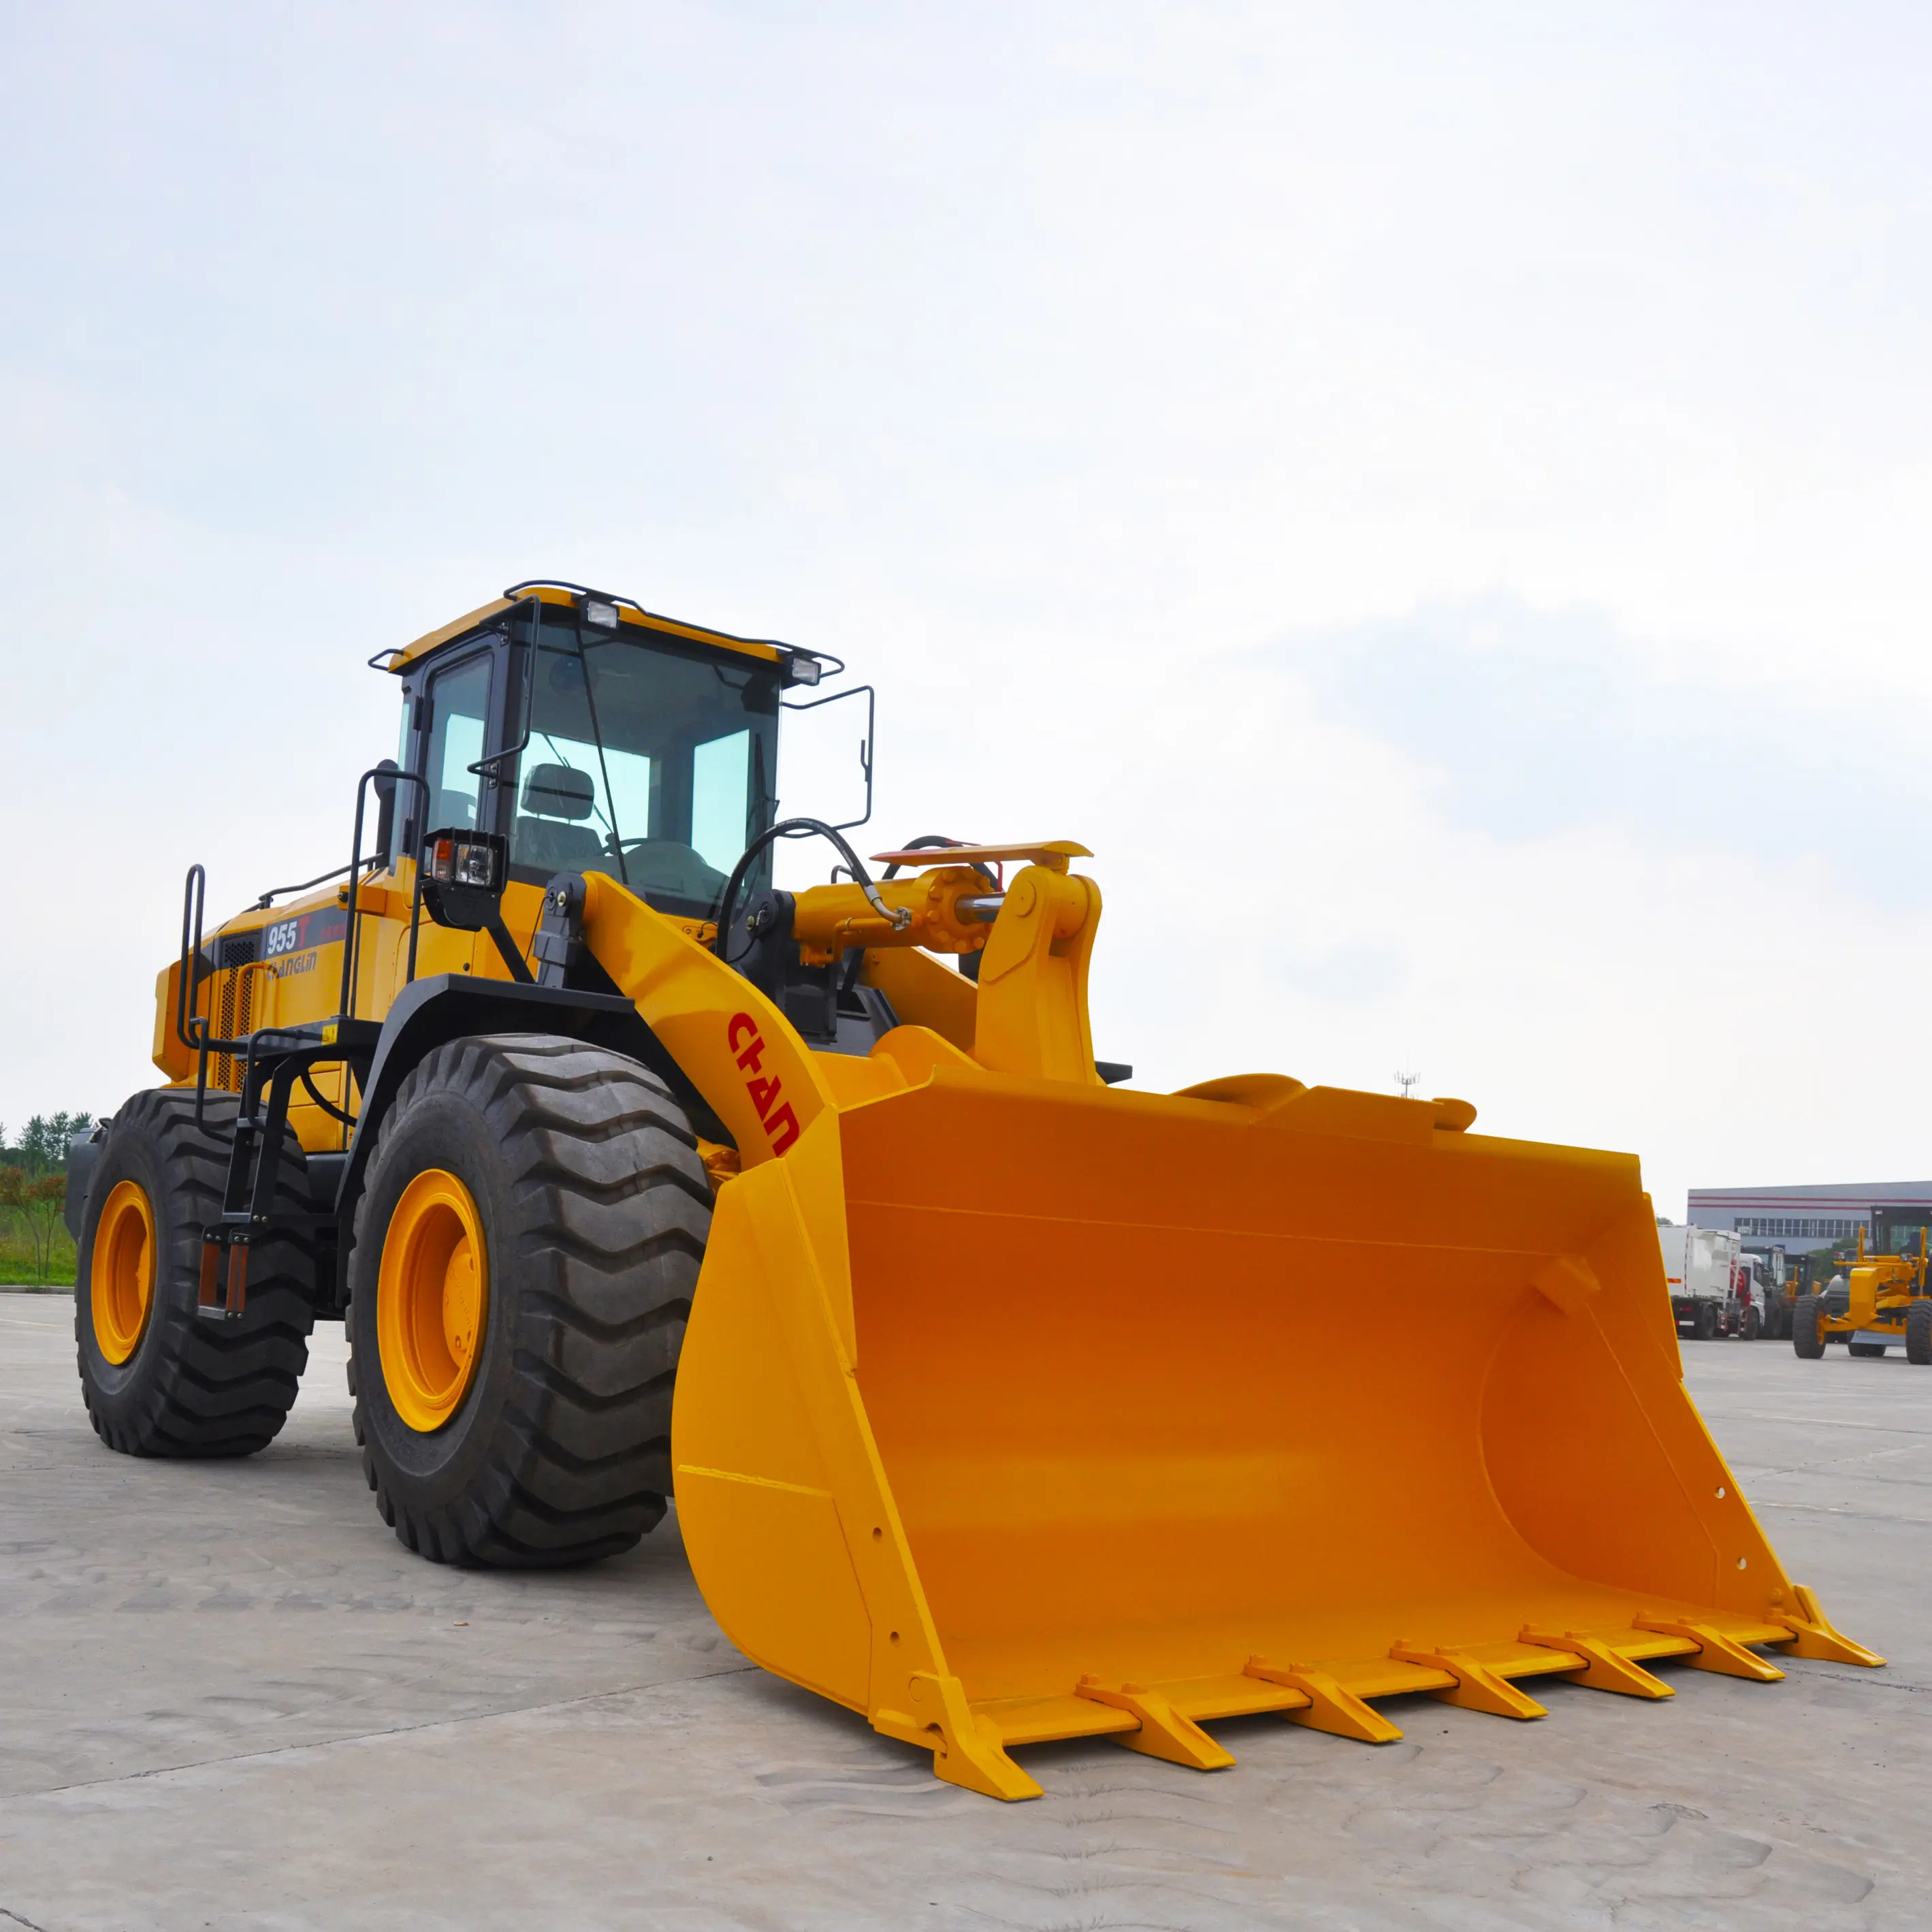 عالية الجودة ZL50T معدات الآلات الثقيلة الجبهة نهاية loader العجلة loader وزن الحمل 5 طن